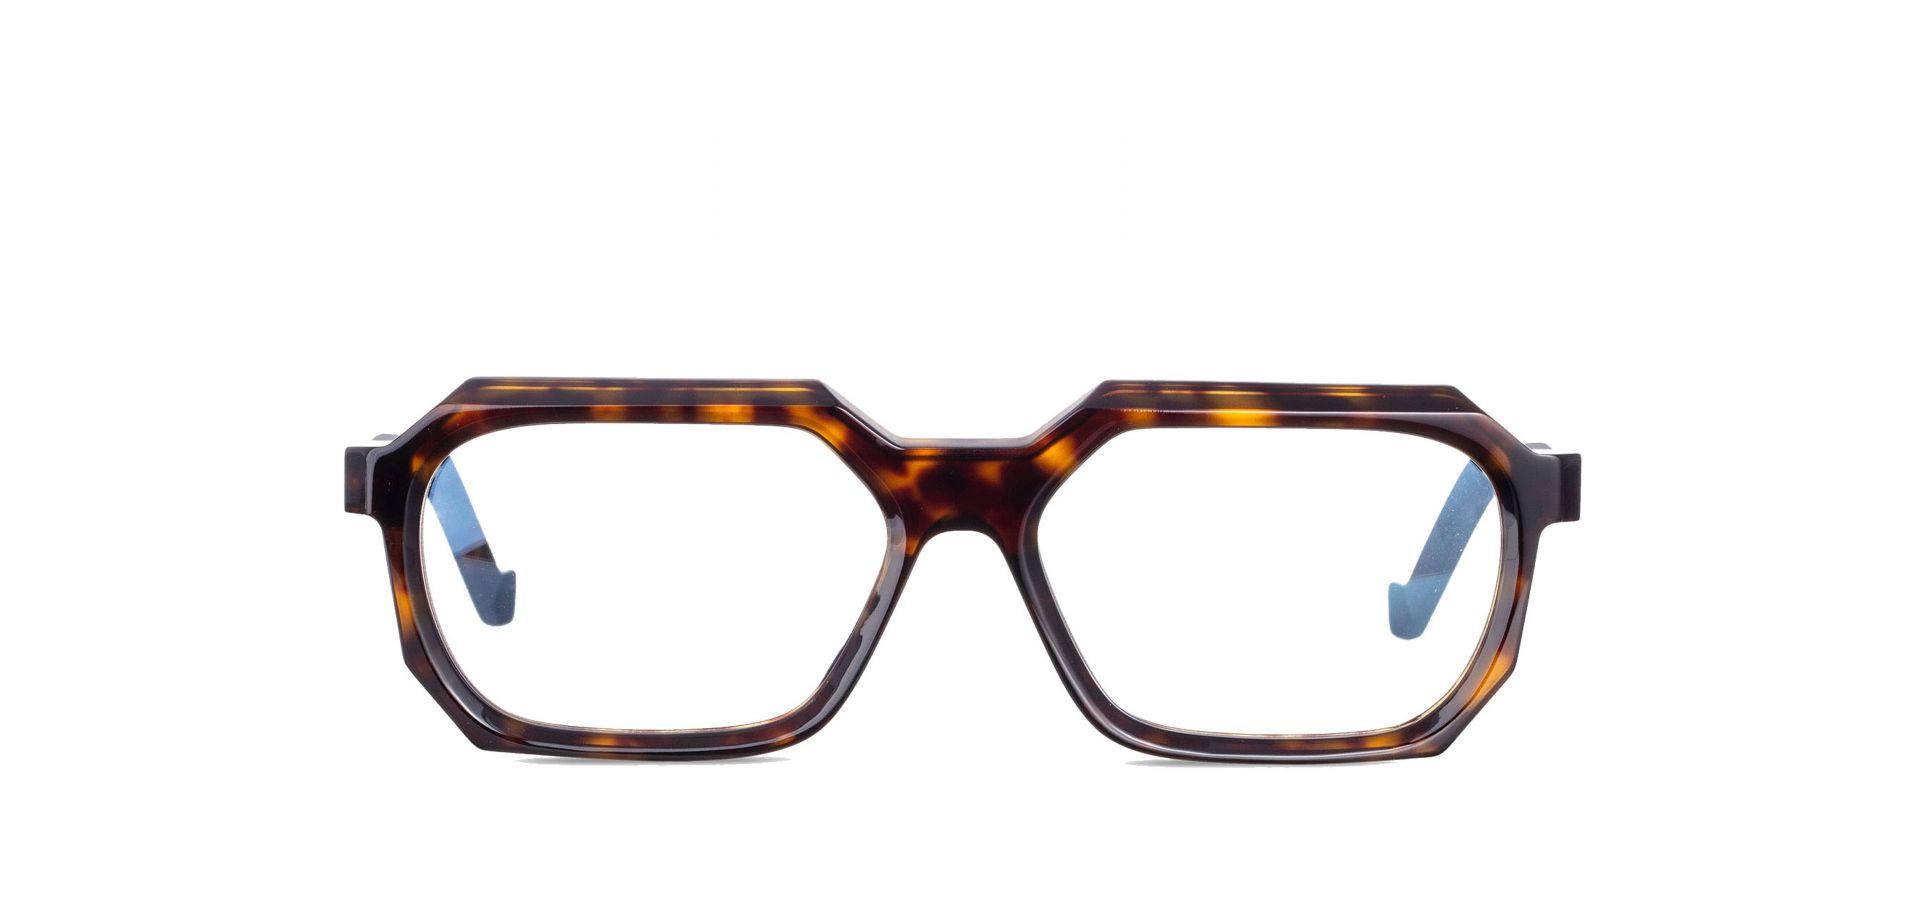 Korekcijska očala VAVA WL0048 HAVANA: Velikost: 56/16/140, Spol: unisex, Material: acetat/kovinska